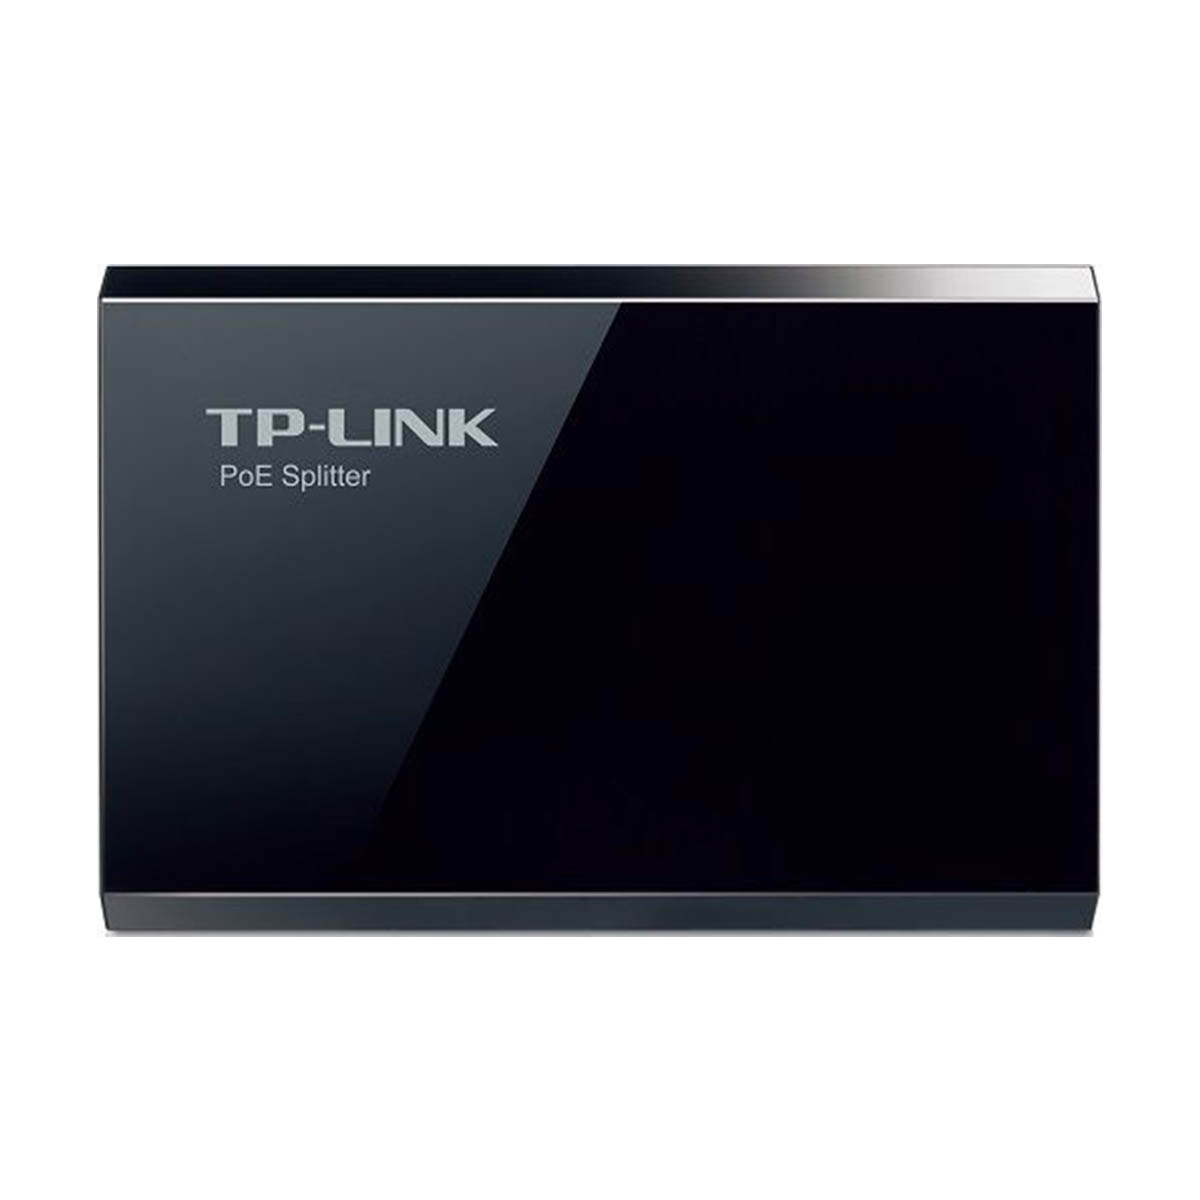 Адаптер TP-LINK TL-POE10R PoE-разветвитель, цвет черный